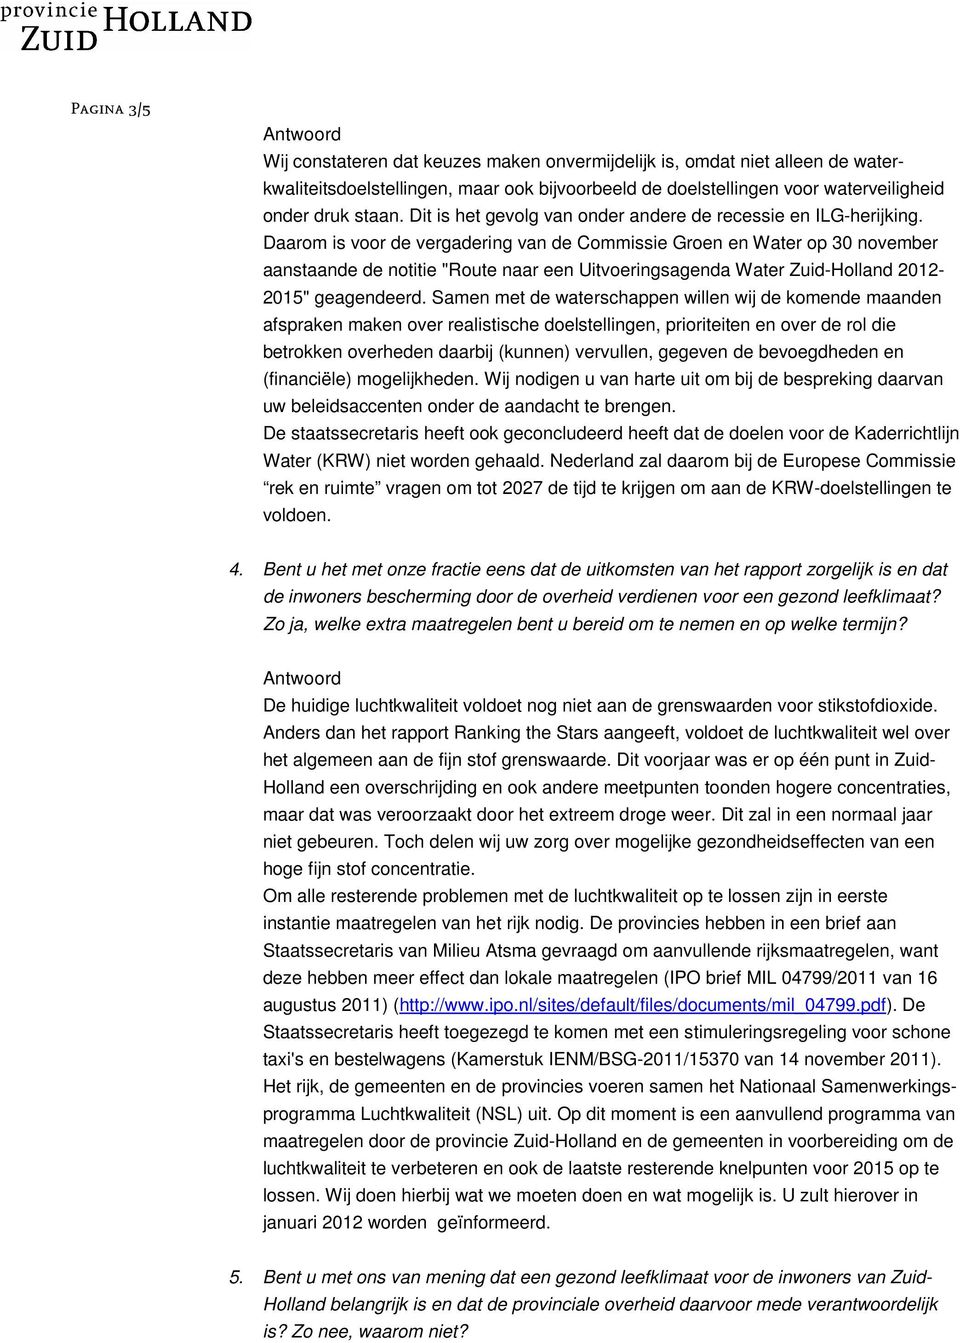 Daarom is voor de vergadering van de Commissie Groen en Water op 30 november aanstaande de notitie "Route naar een Uitvoeringsagenda Water Zuid-Holland 2012-2015" geagendeerd.